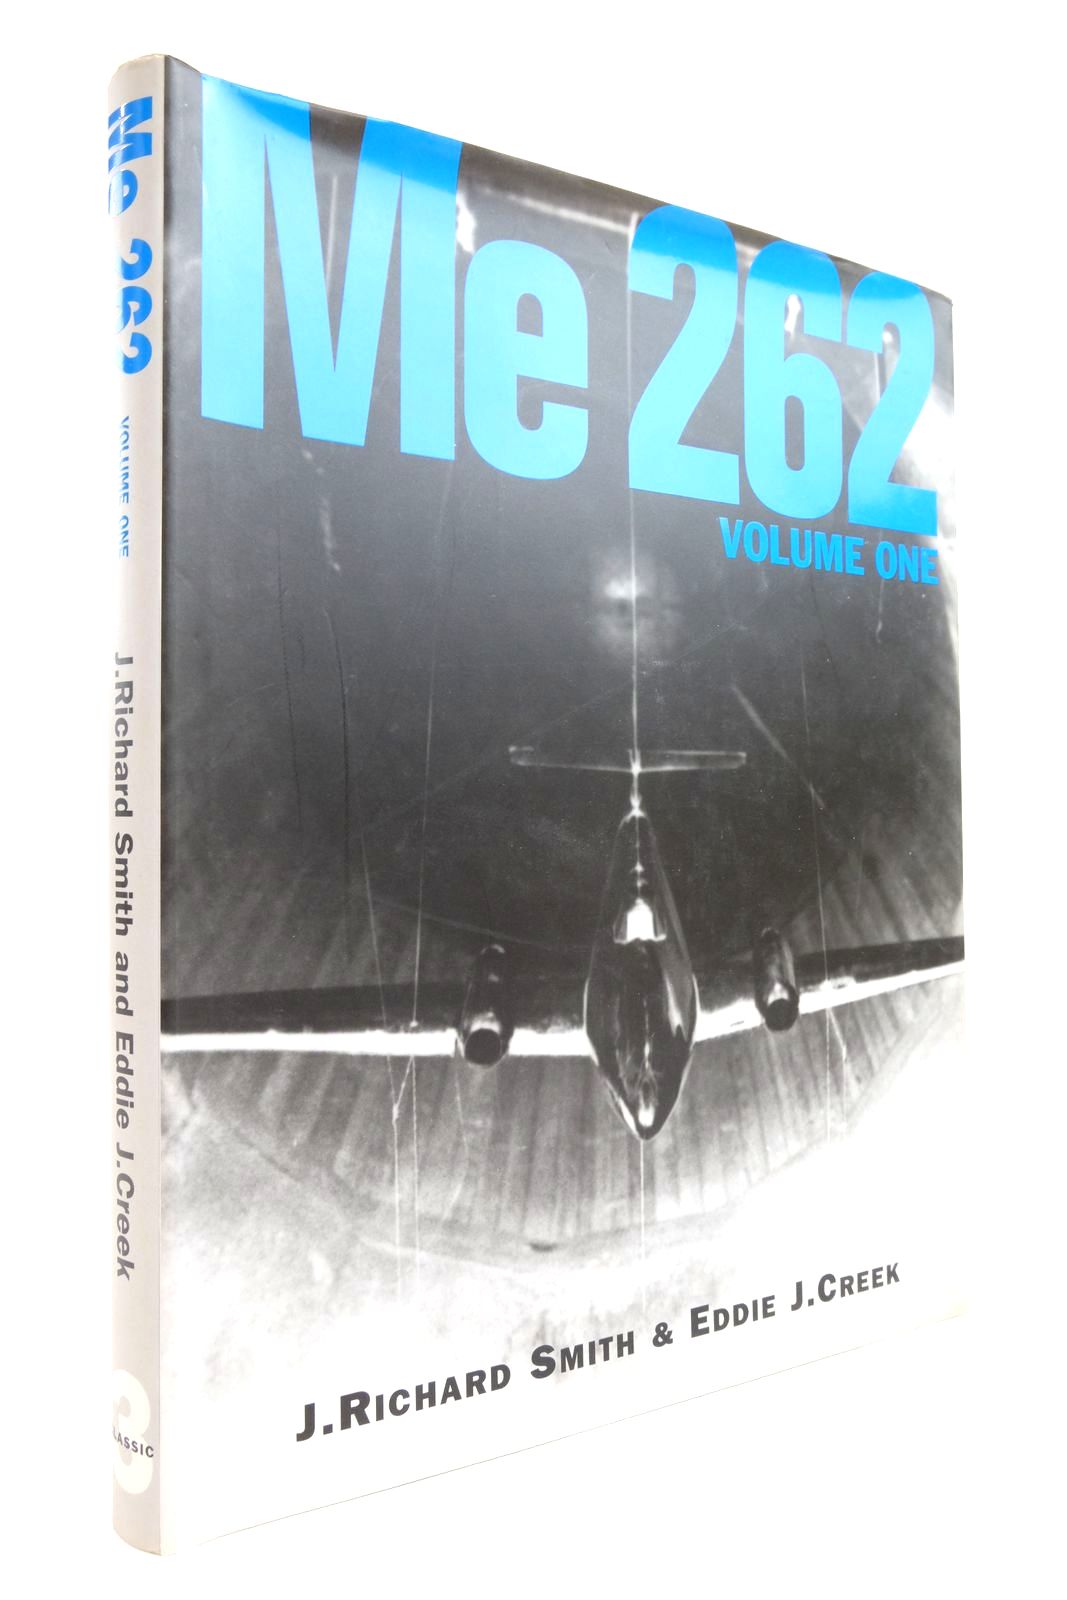 ME 262 Volume One